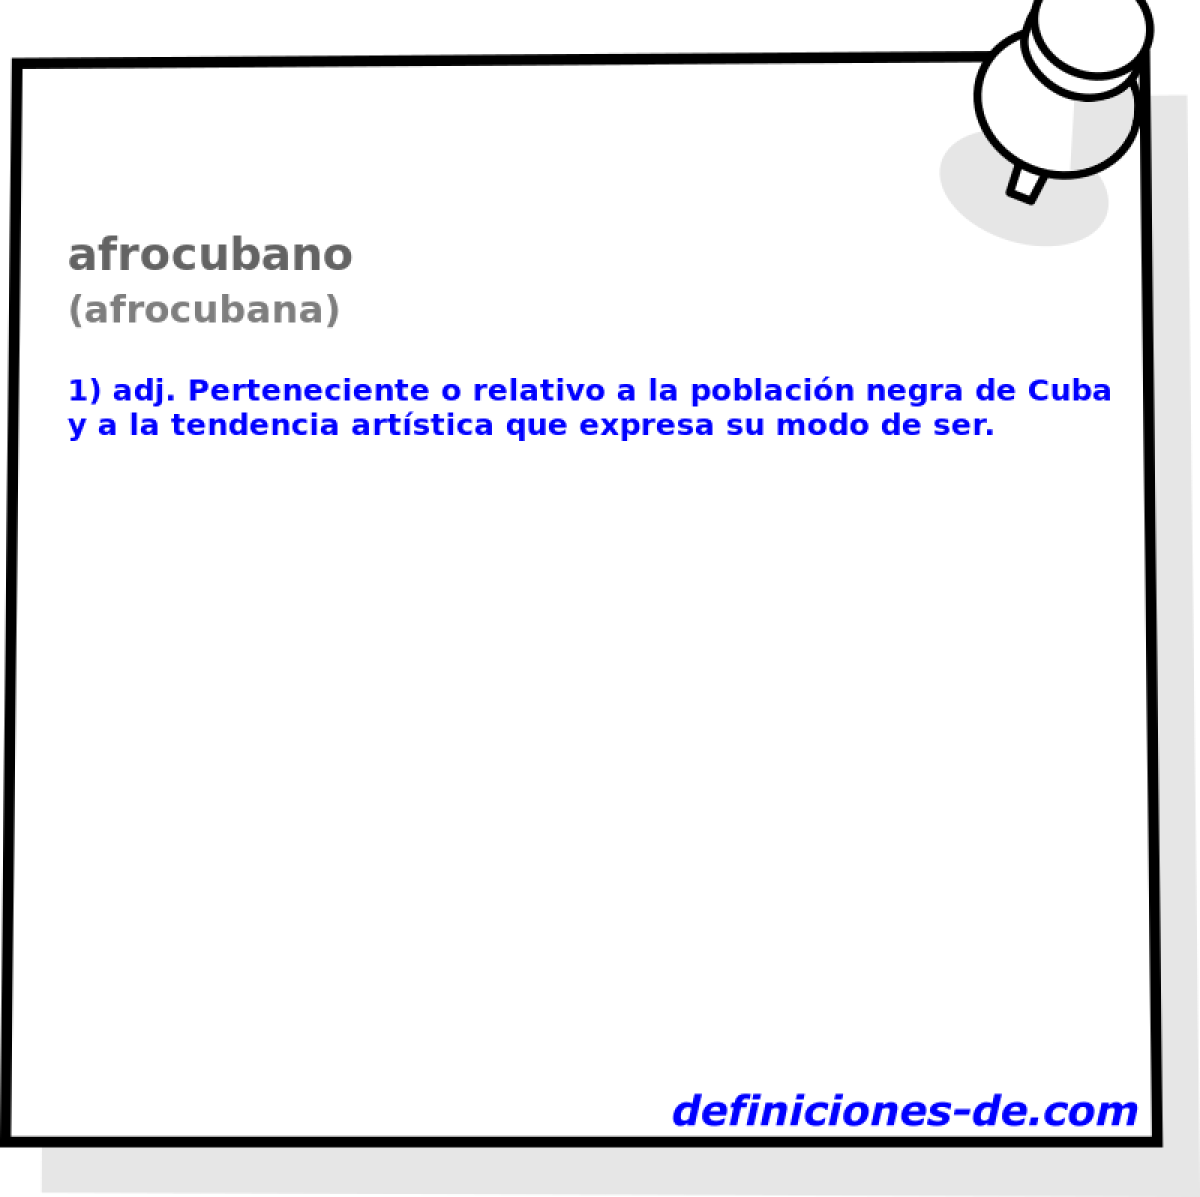 afrocubano (afrocubana)